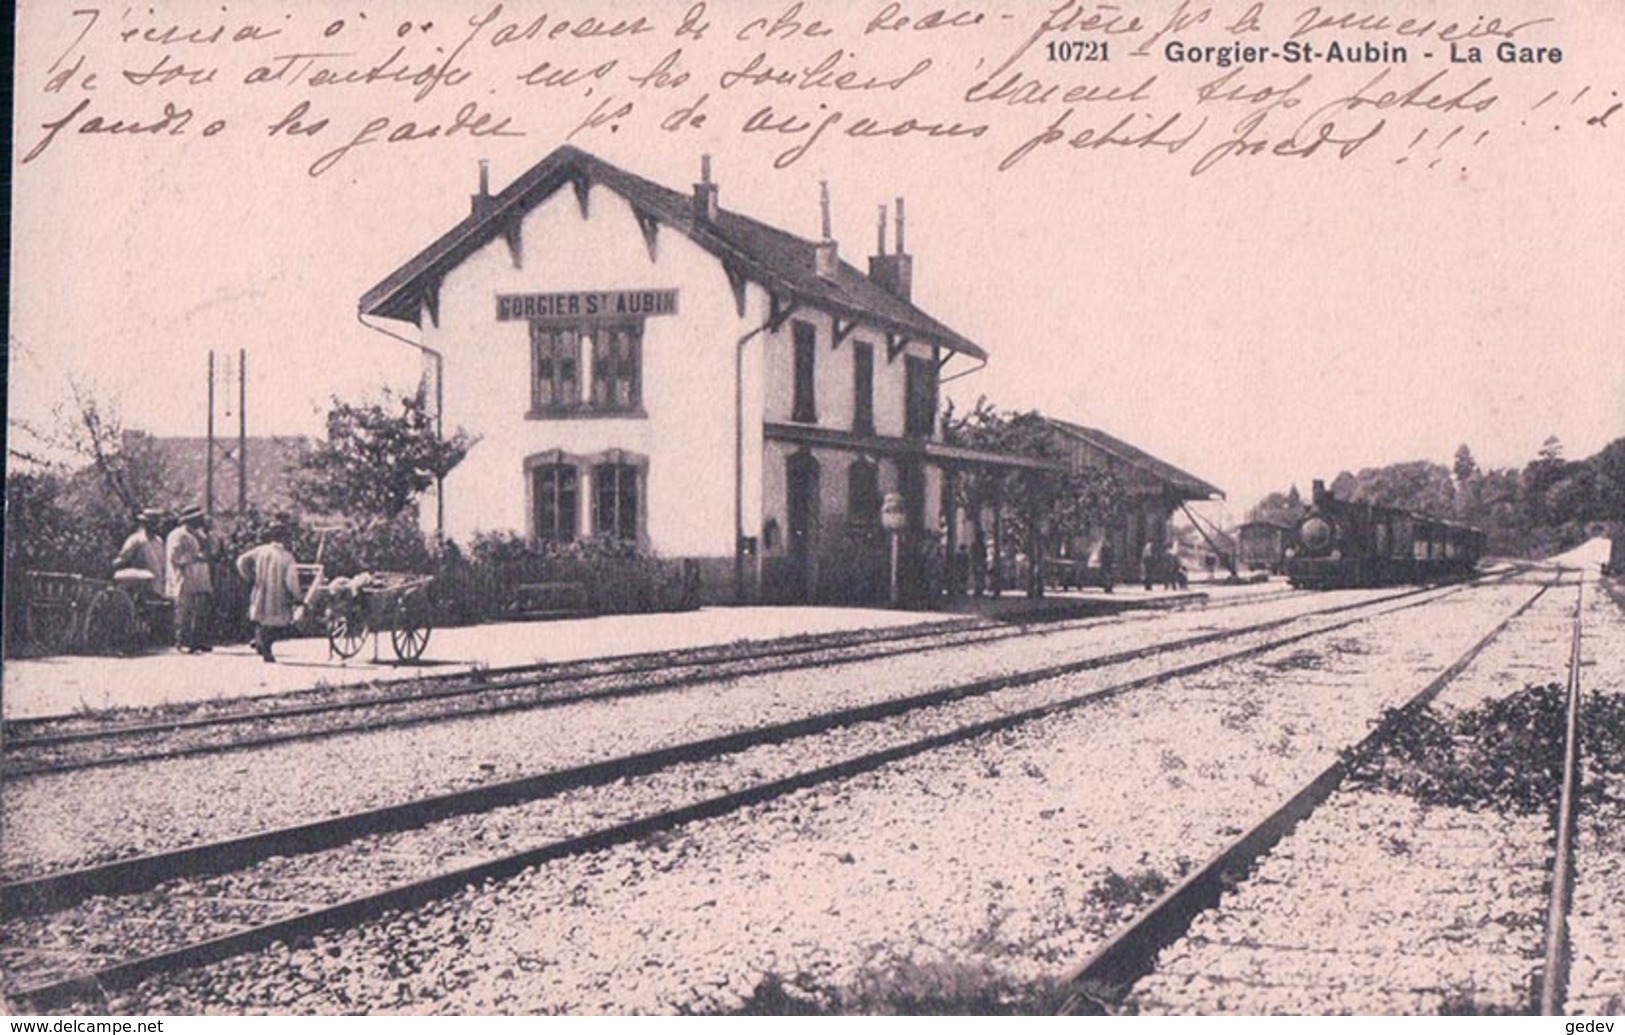 Gorgier St Aubin, Chemin De Fer, La Gare Et Train à Vapeur (18.9.1912) - Saint-Aubin/Sauges